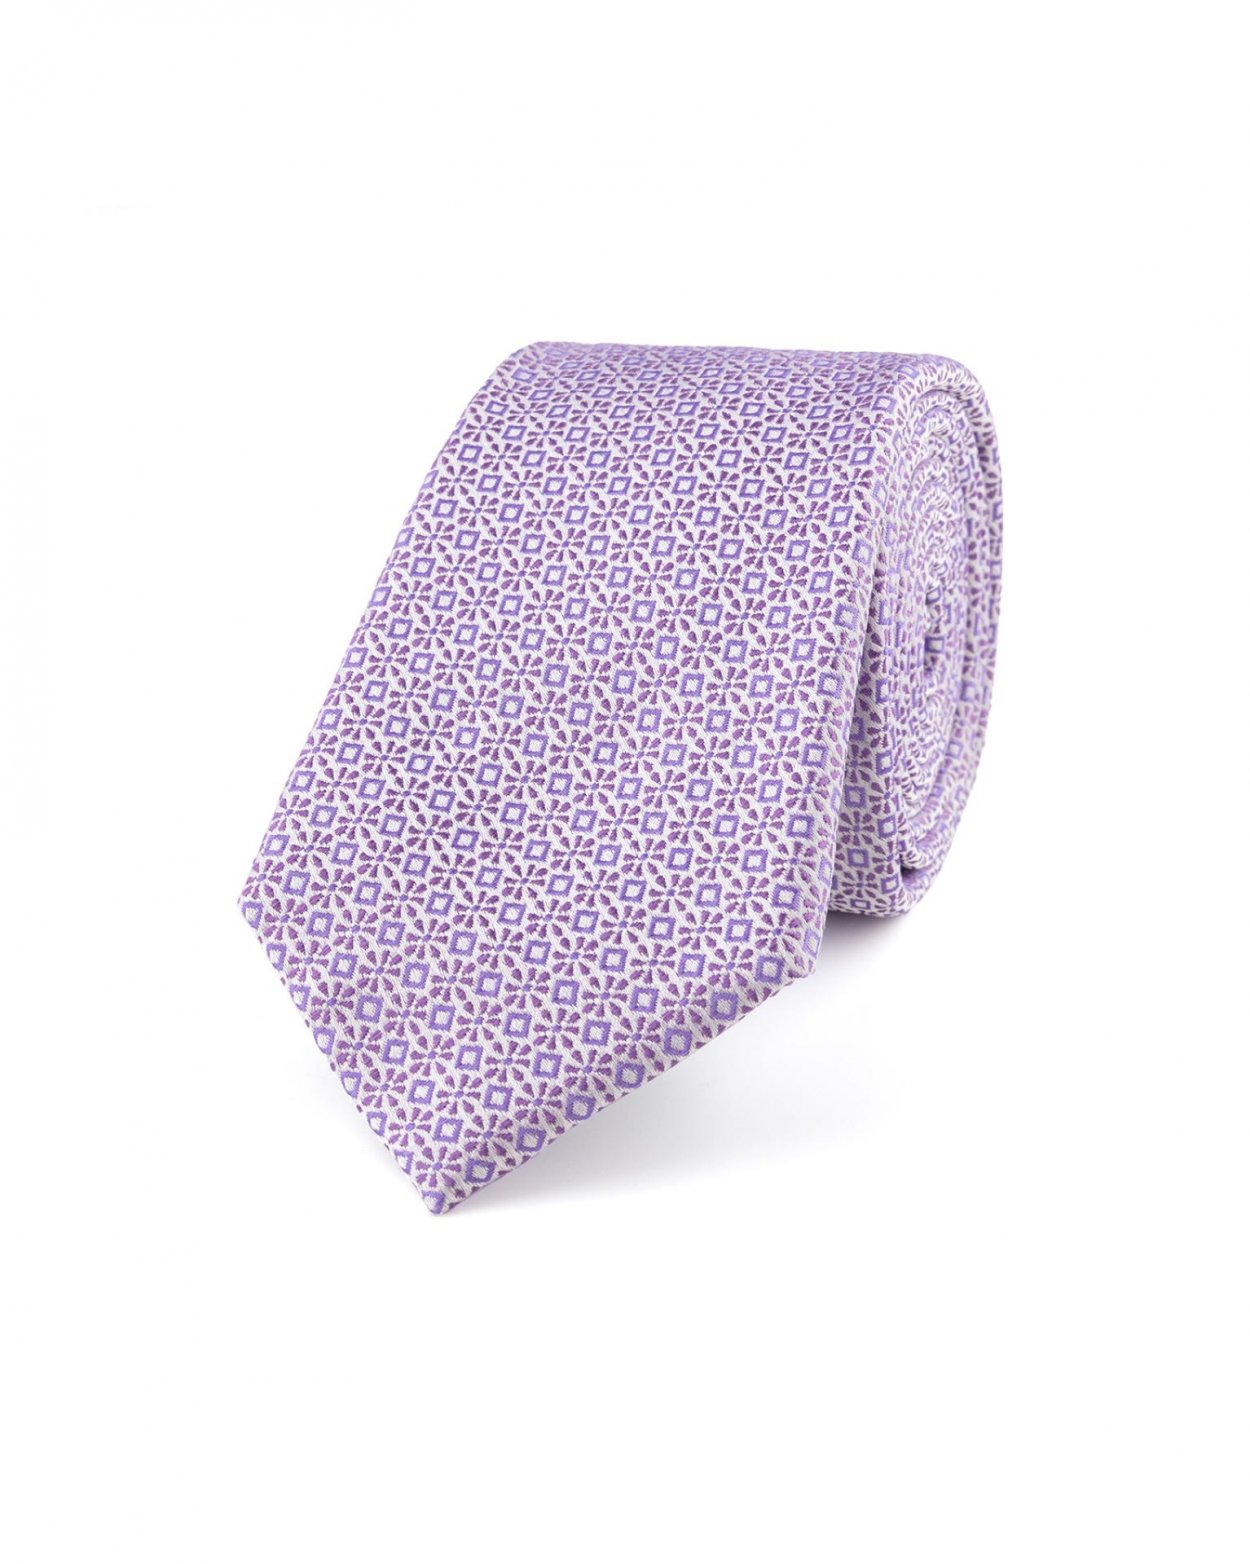 Fialová hedvábná kravata s jemným vzorem